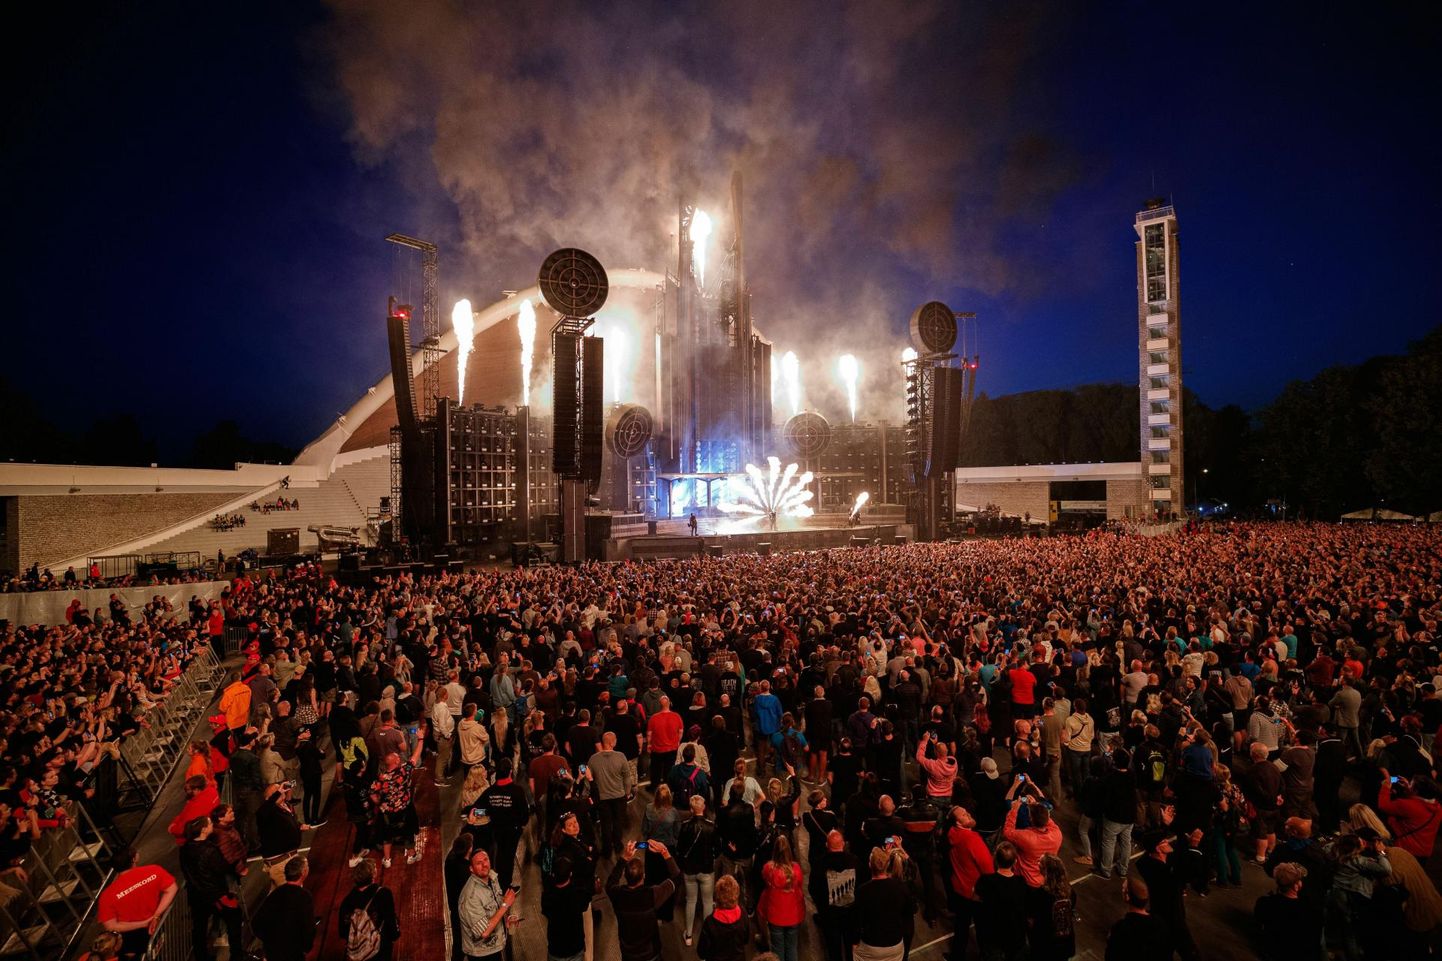 Muusika ühendab ja toob kokku. Rammsteini kontserti Tallinna lauluväljakul tuli nautima üle 60 000 inimese.